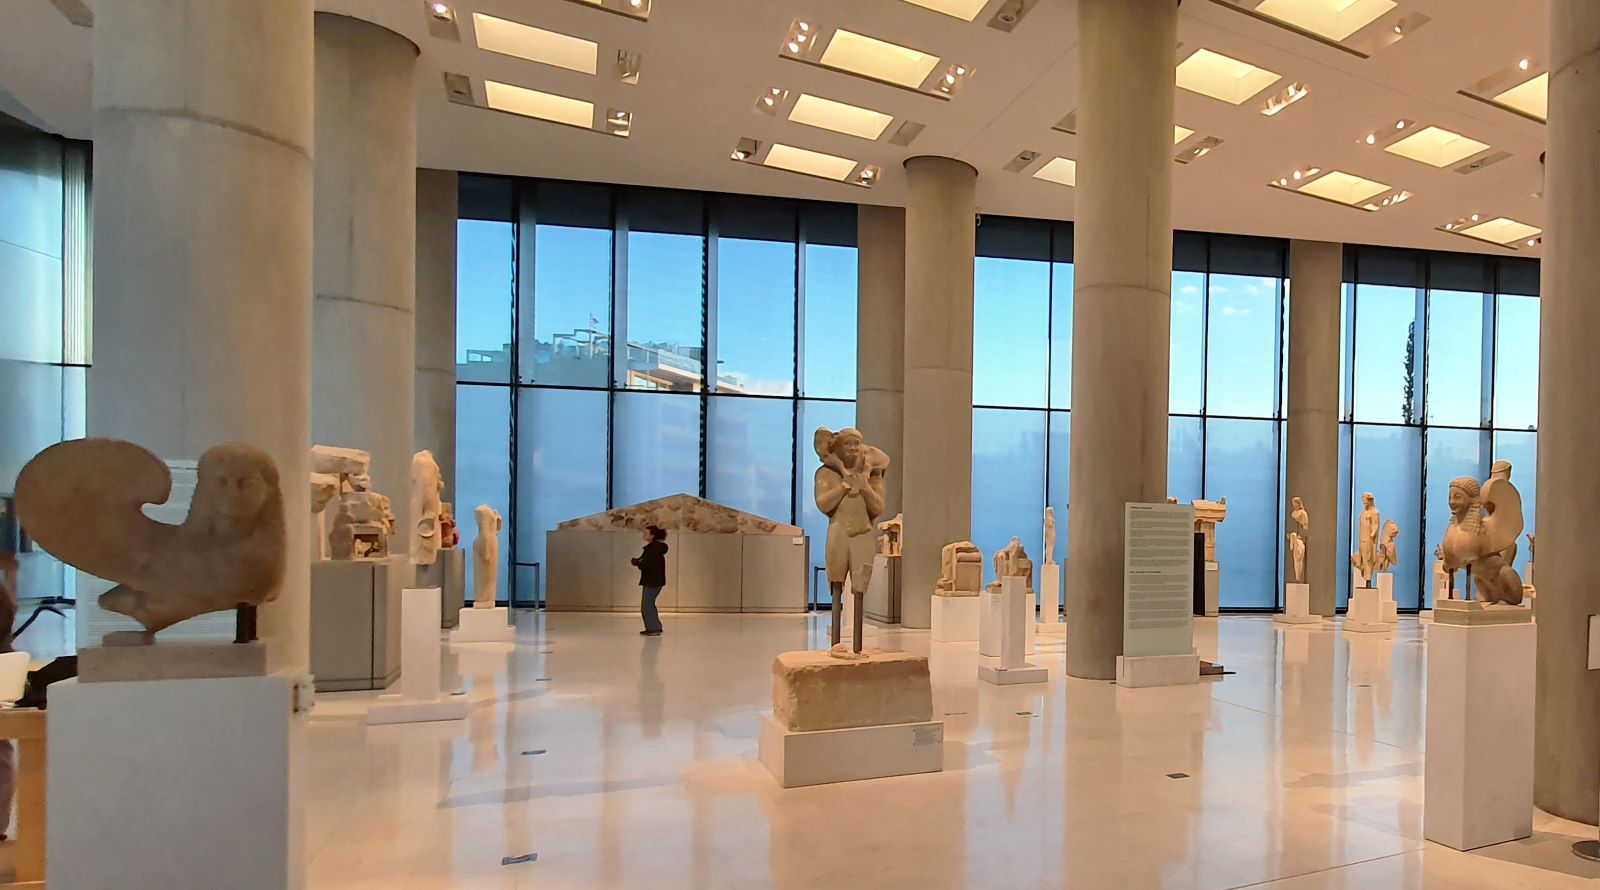 Η νέα «είσοδος» στην Αίθουσα Αρχαϊκών με δύο σφίγγες εκατέρωθεν και τον Μοσχοφόρο στο κέντρο